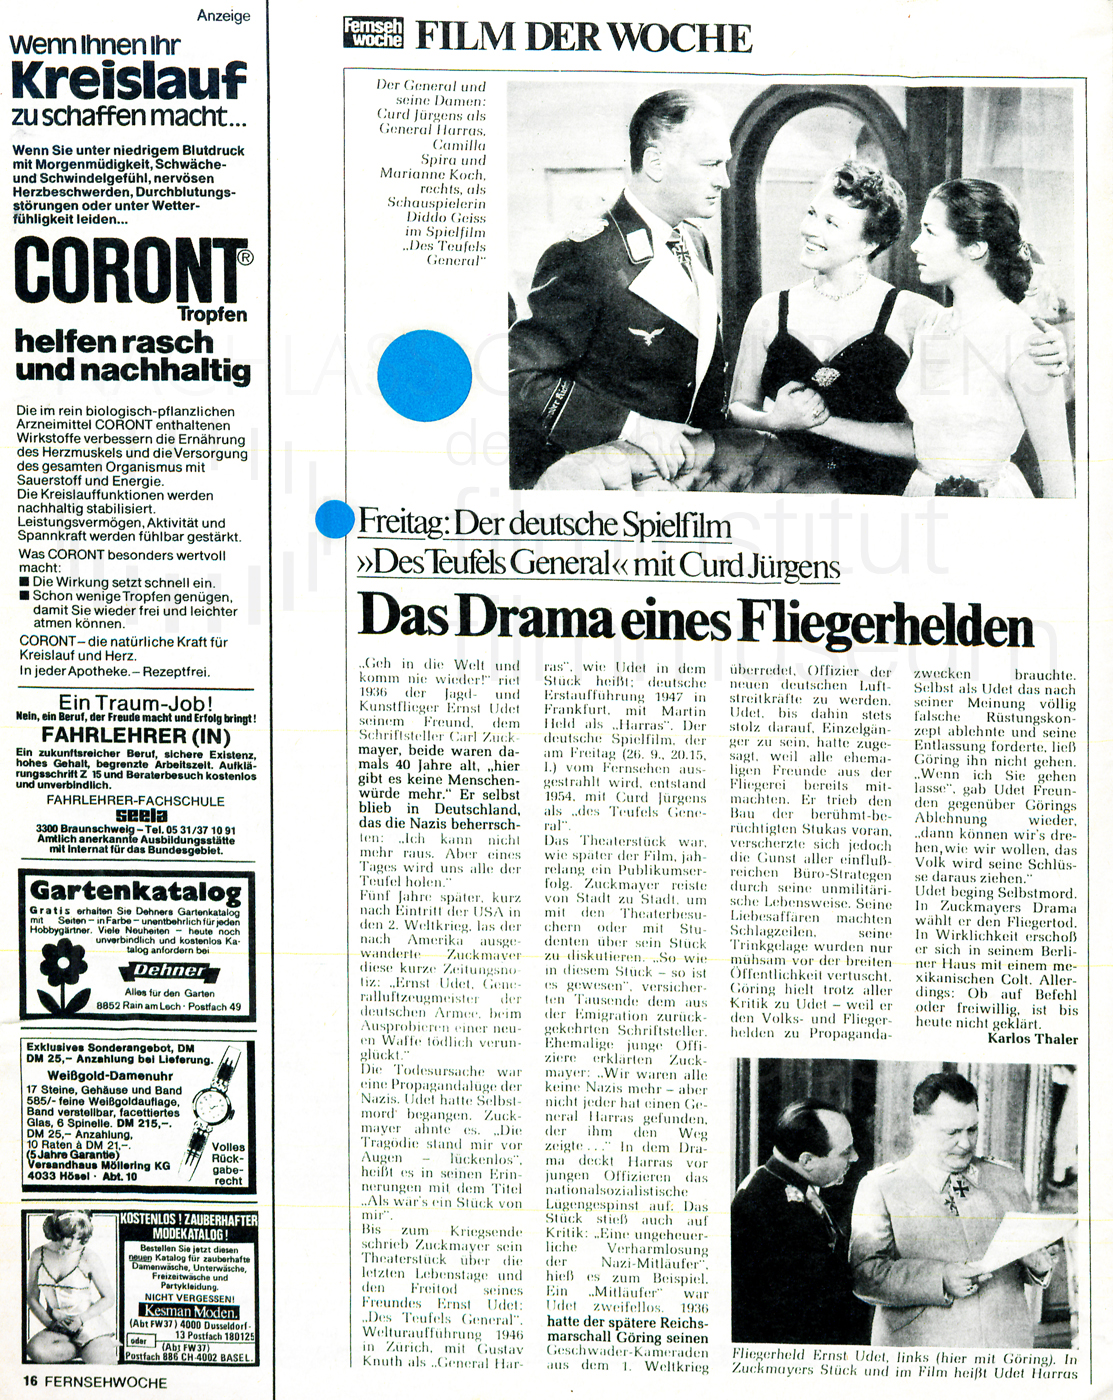 Telestar:"Das Drama eines Fliegerhelden", Nr. 38, 20.9-26.9.1975